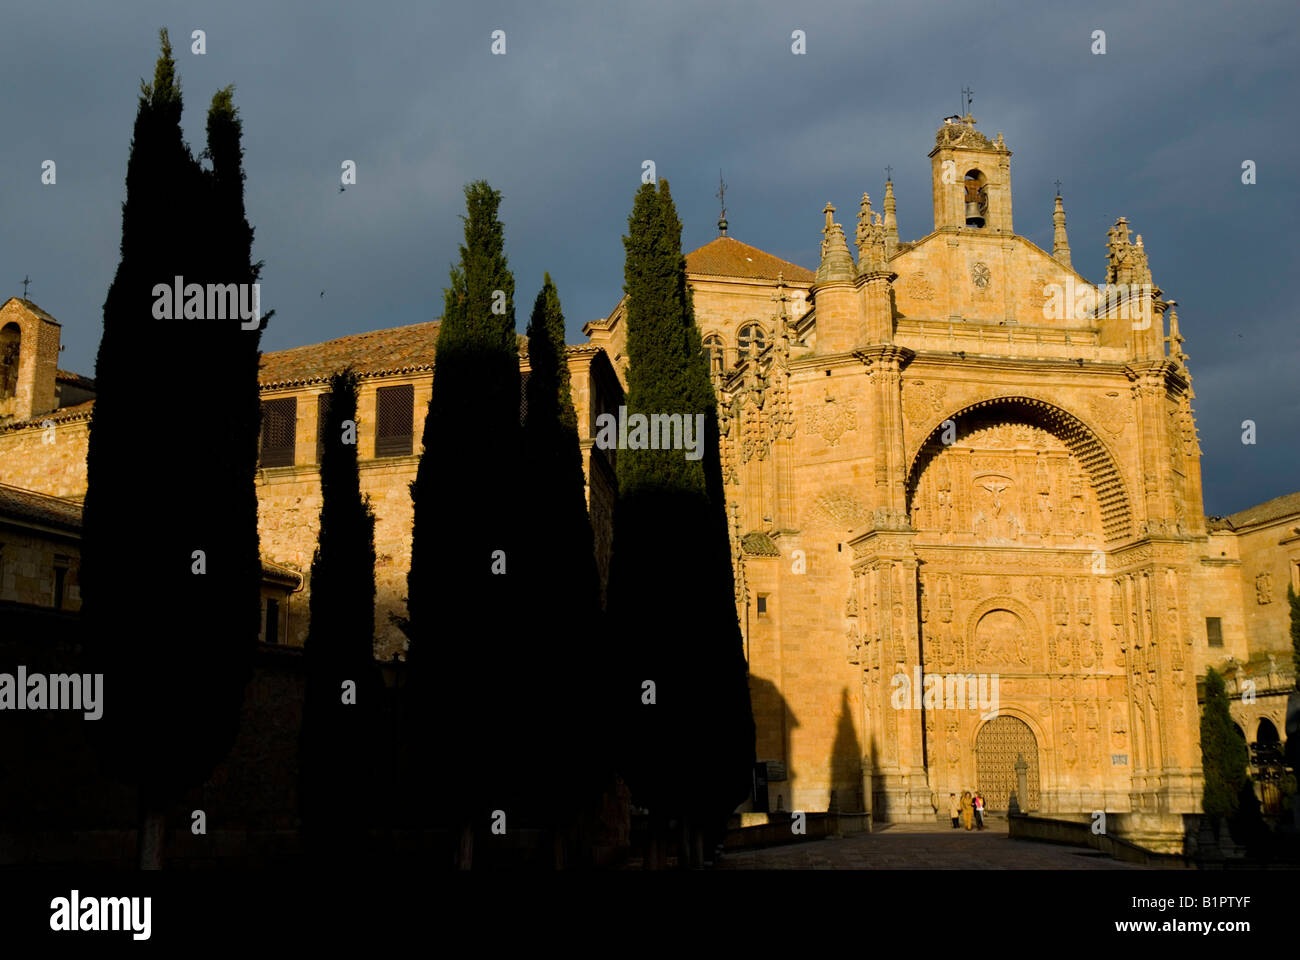 Dominicos del monasterio de San Esteban de estilo renacentista de la ciudad de Salamanca Castilla y León España región Foto de stock